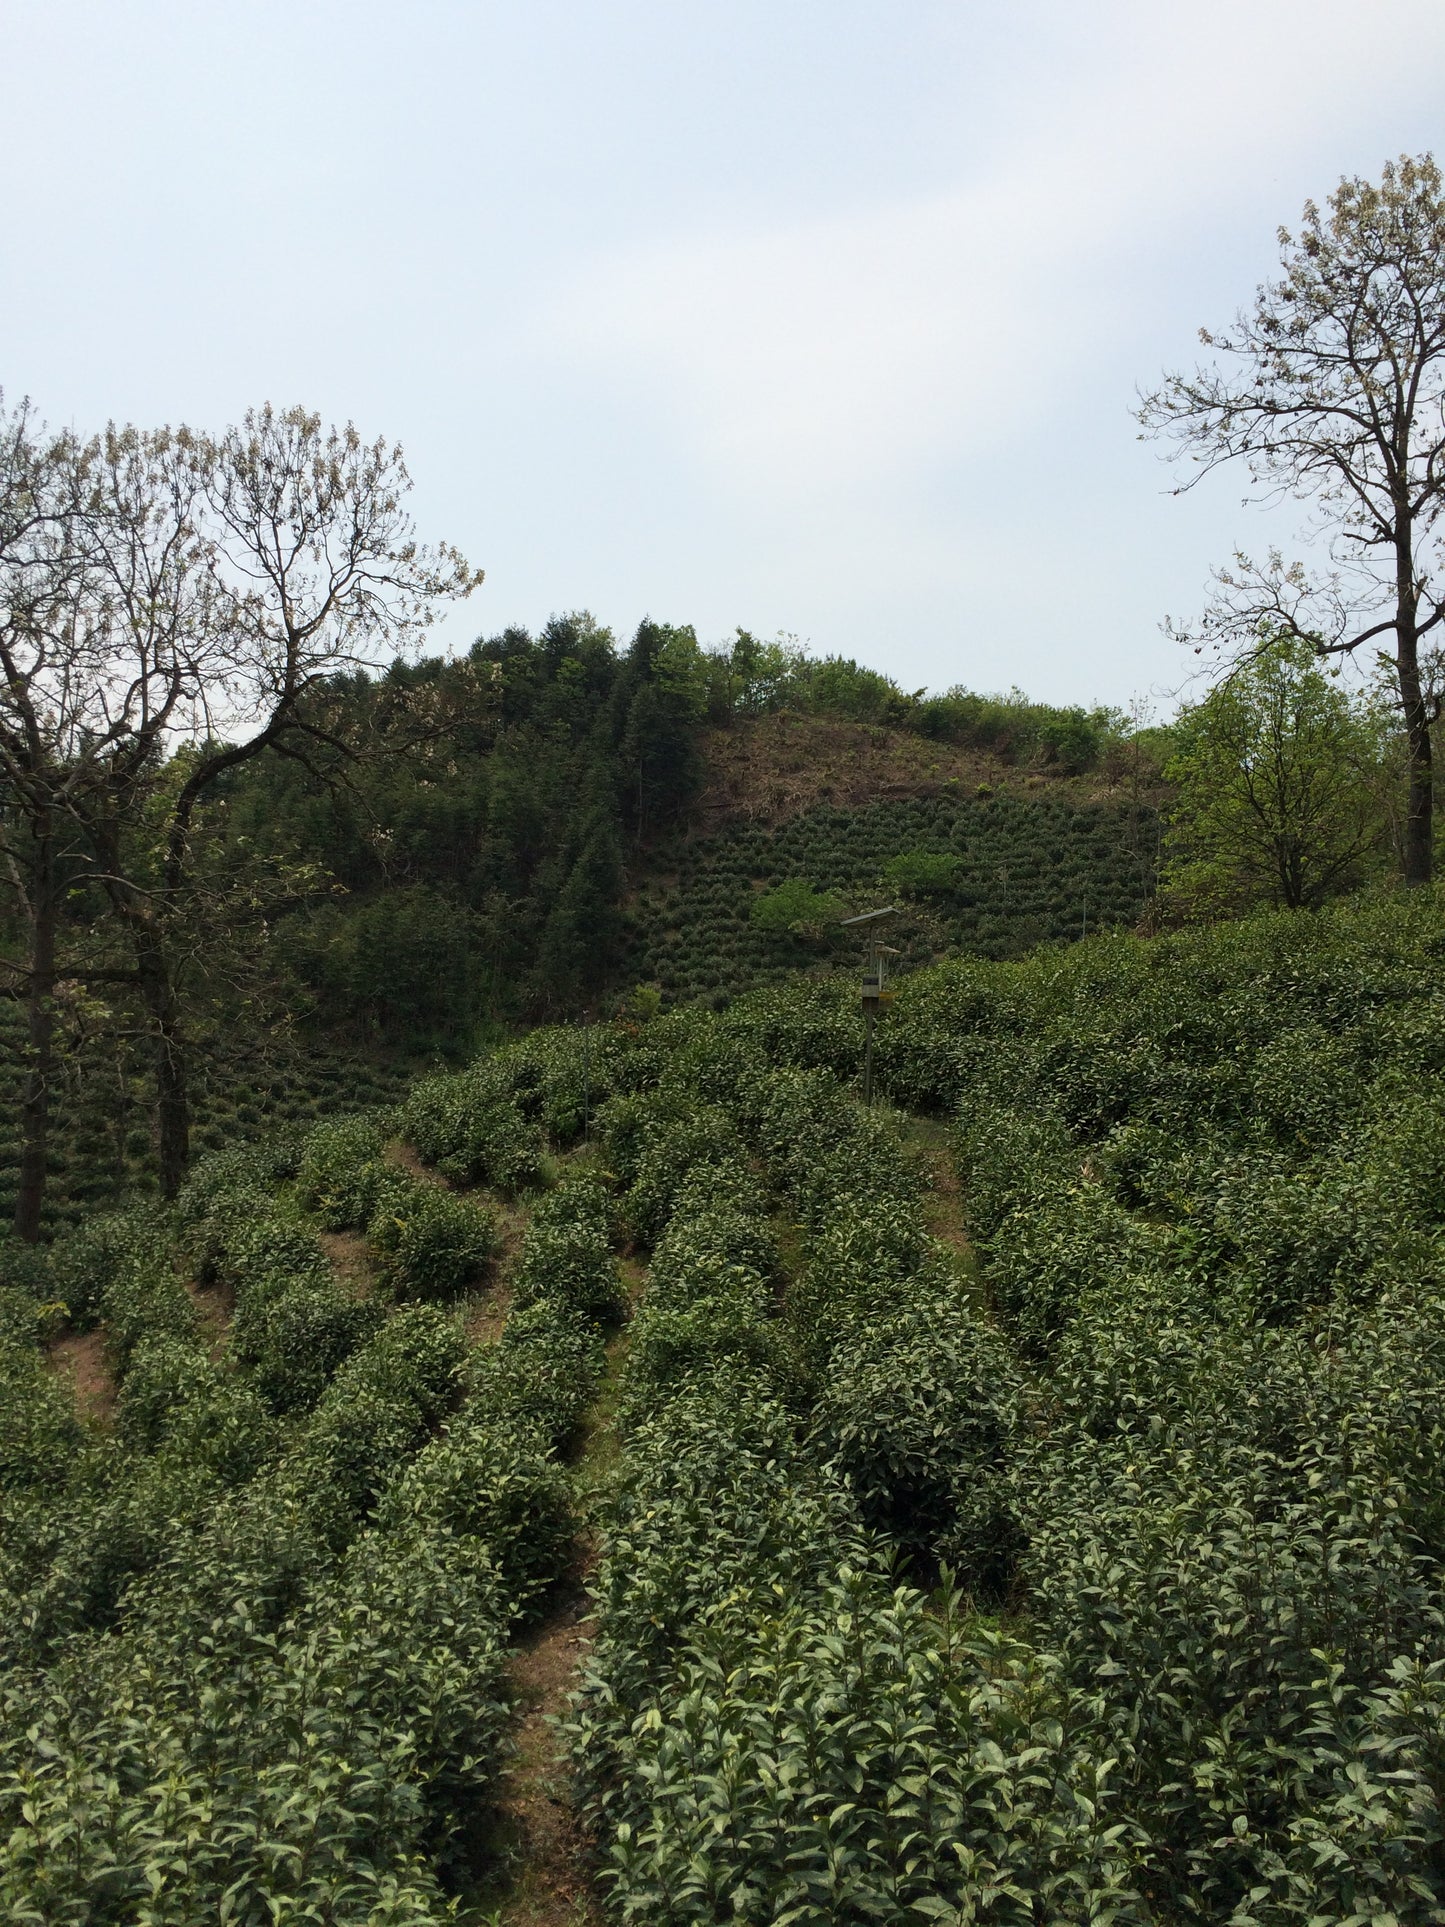 Lapsang Souchong Strong Smoke ( Organic Black Tea) (56g)